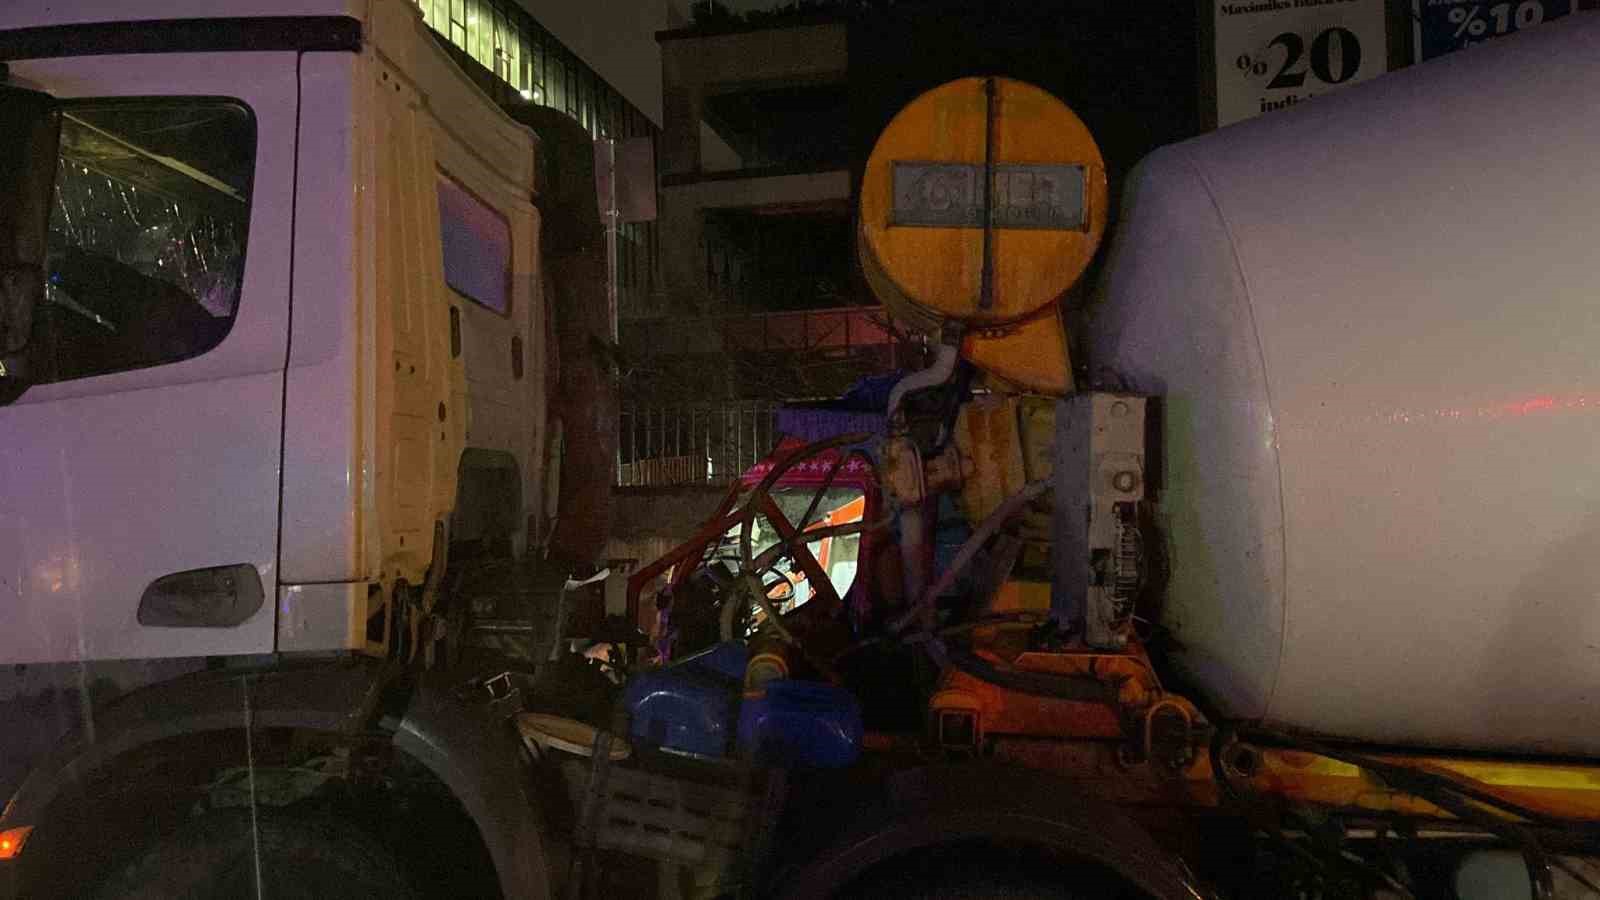 Sarıyer’de kontrolden çıkan beton mikseri karşı şeride geçip kamyonete çarptı: 1 ağır yaralı
